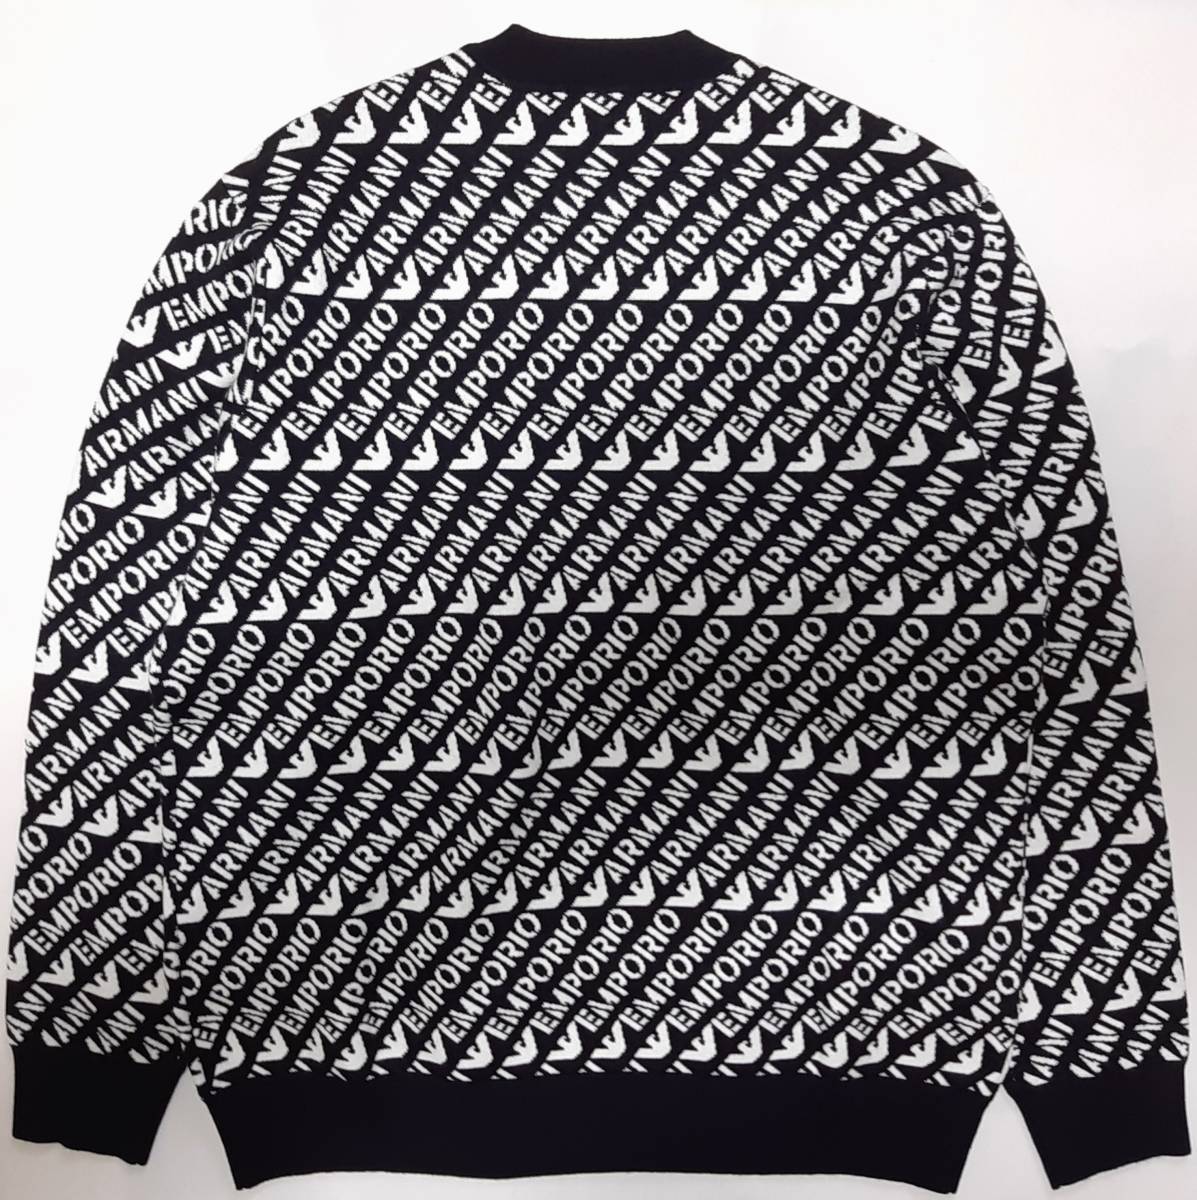 [ новый товар ] EMPORIO ARMANI Contrast. общий с логотипом [ мужской * вязаный ( свитер )]*2023-24 год осень-зима модель размер :XL(52 соответствует ) * цвет : темно-синий & белый 